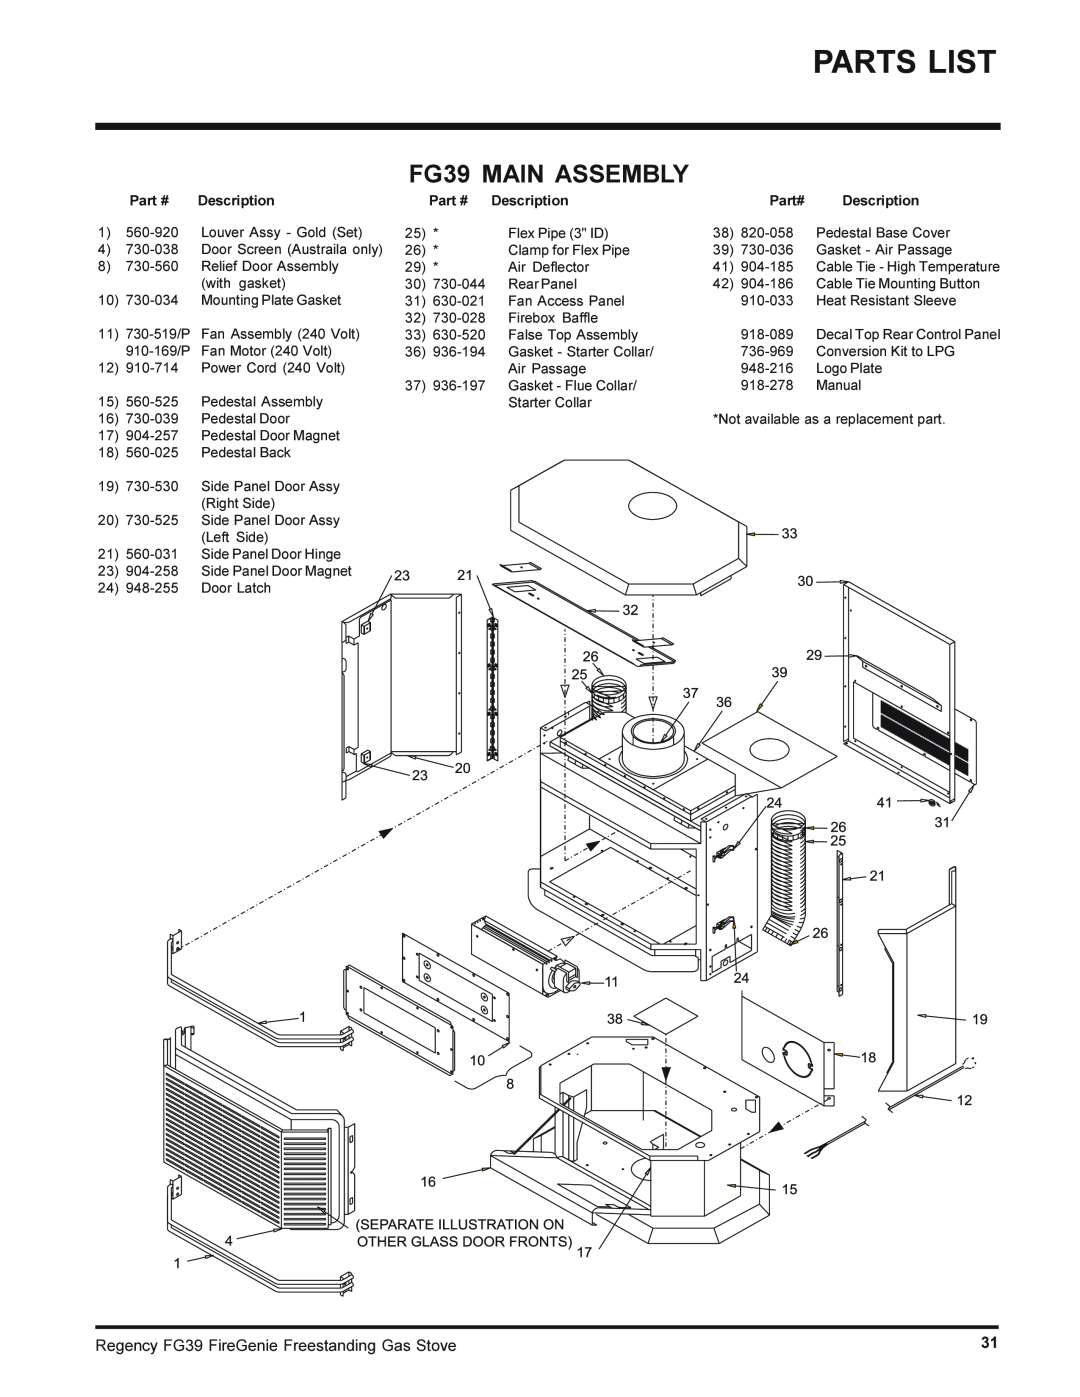 Regency FG39-NG, FG39-LPG installation manual FG39 MAIN ASSEMBLY, Description, Part# 